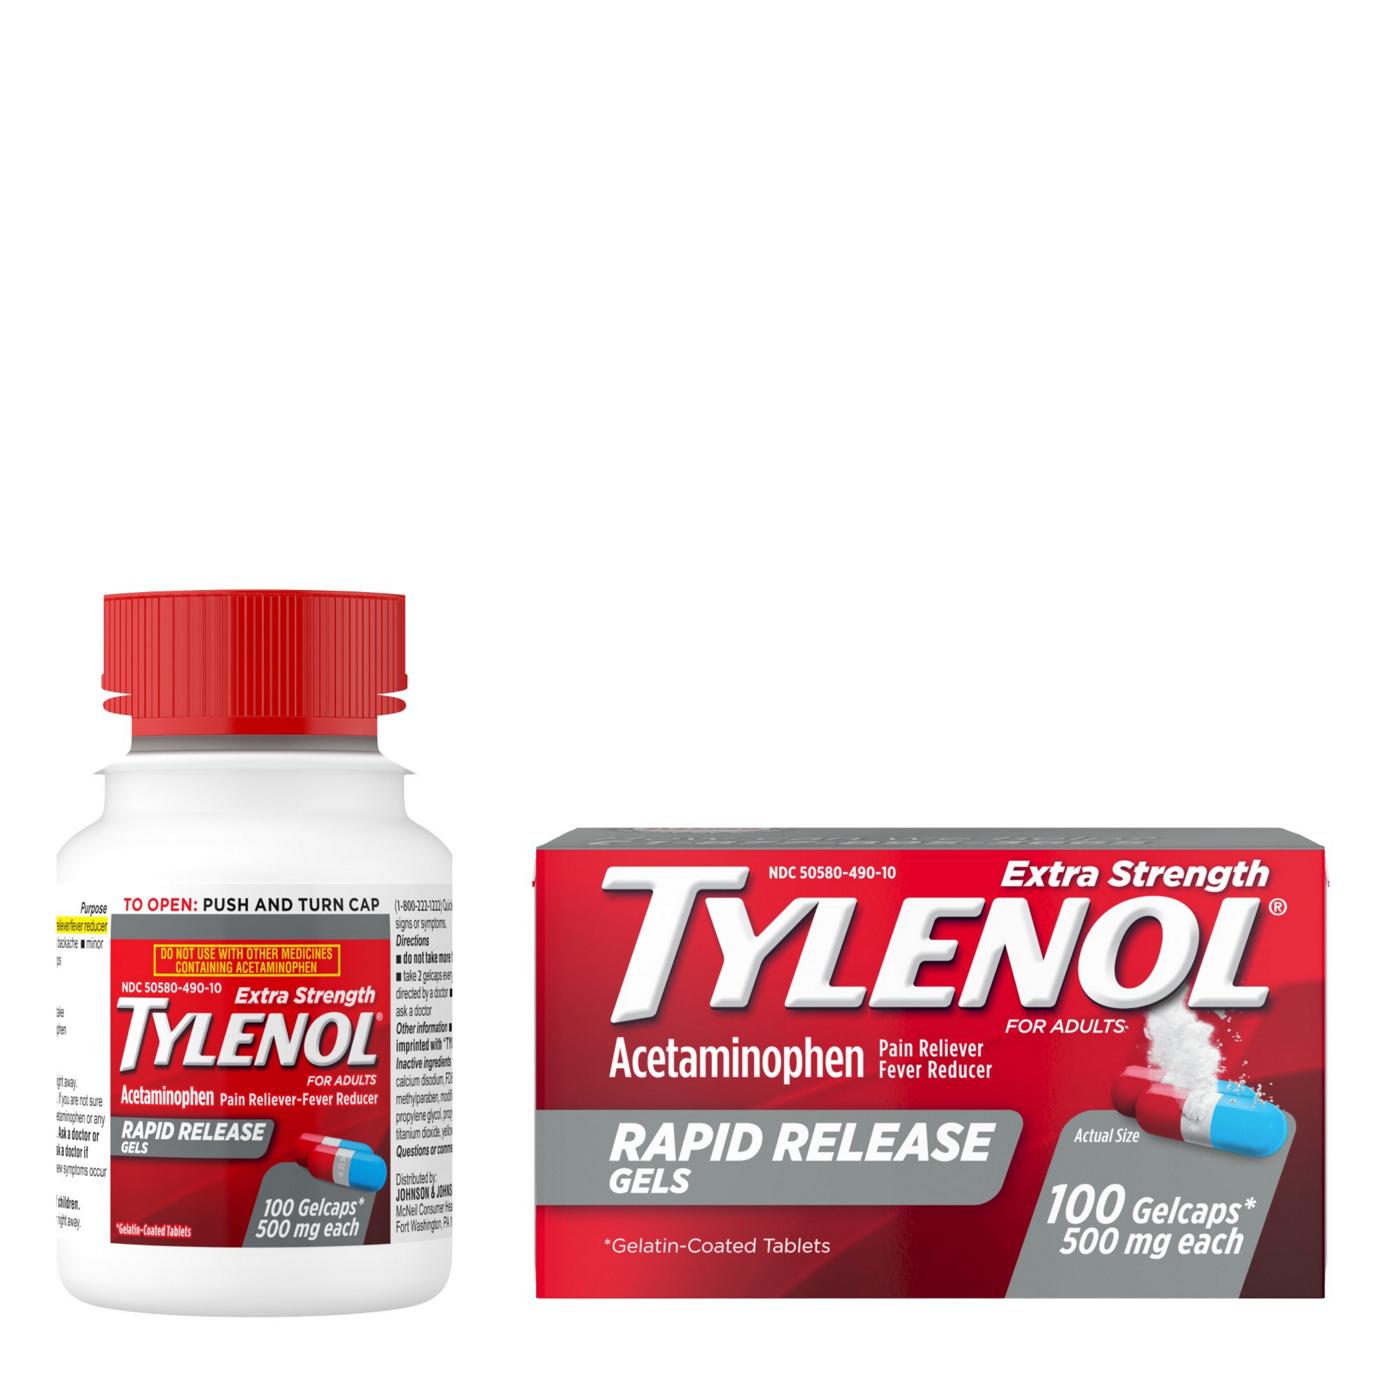 Tylenol Rapid Release Gels; image 3 of 6